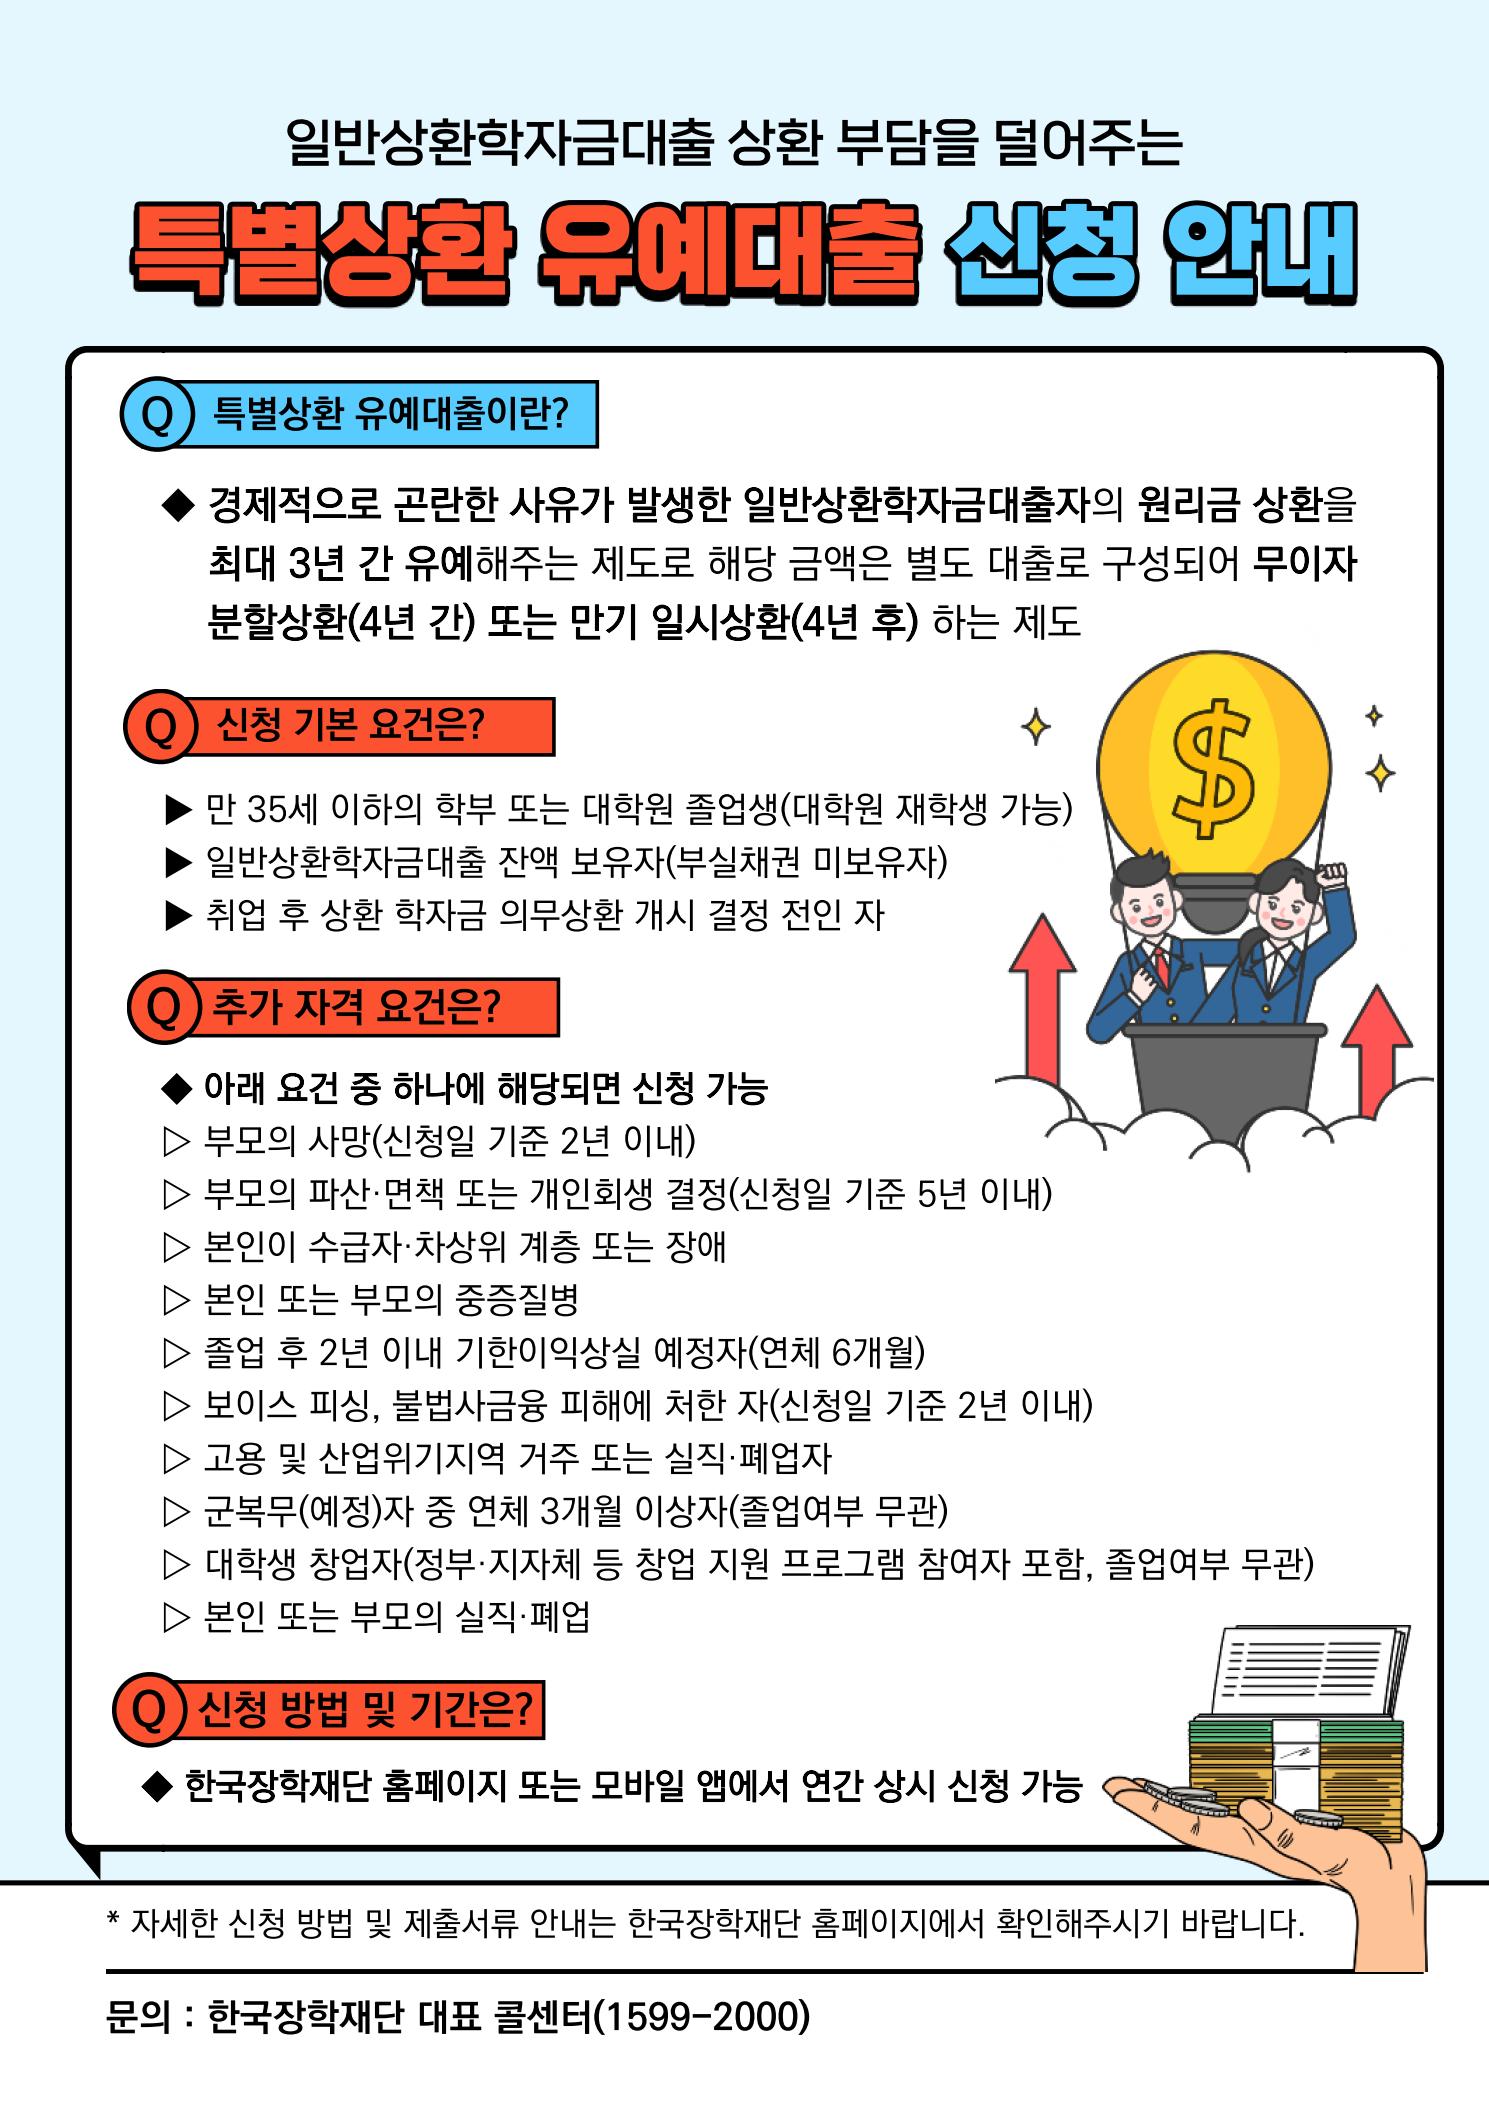 한국장학재단 특별상환유예대출 제도 안내의 관련된 이미지 입니다.